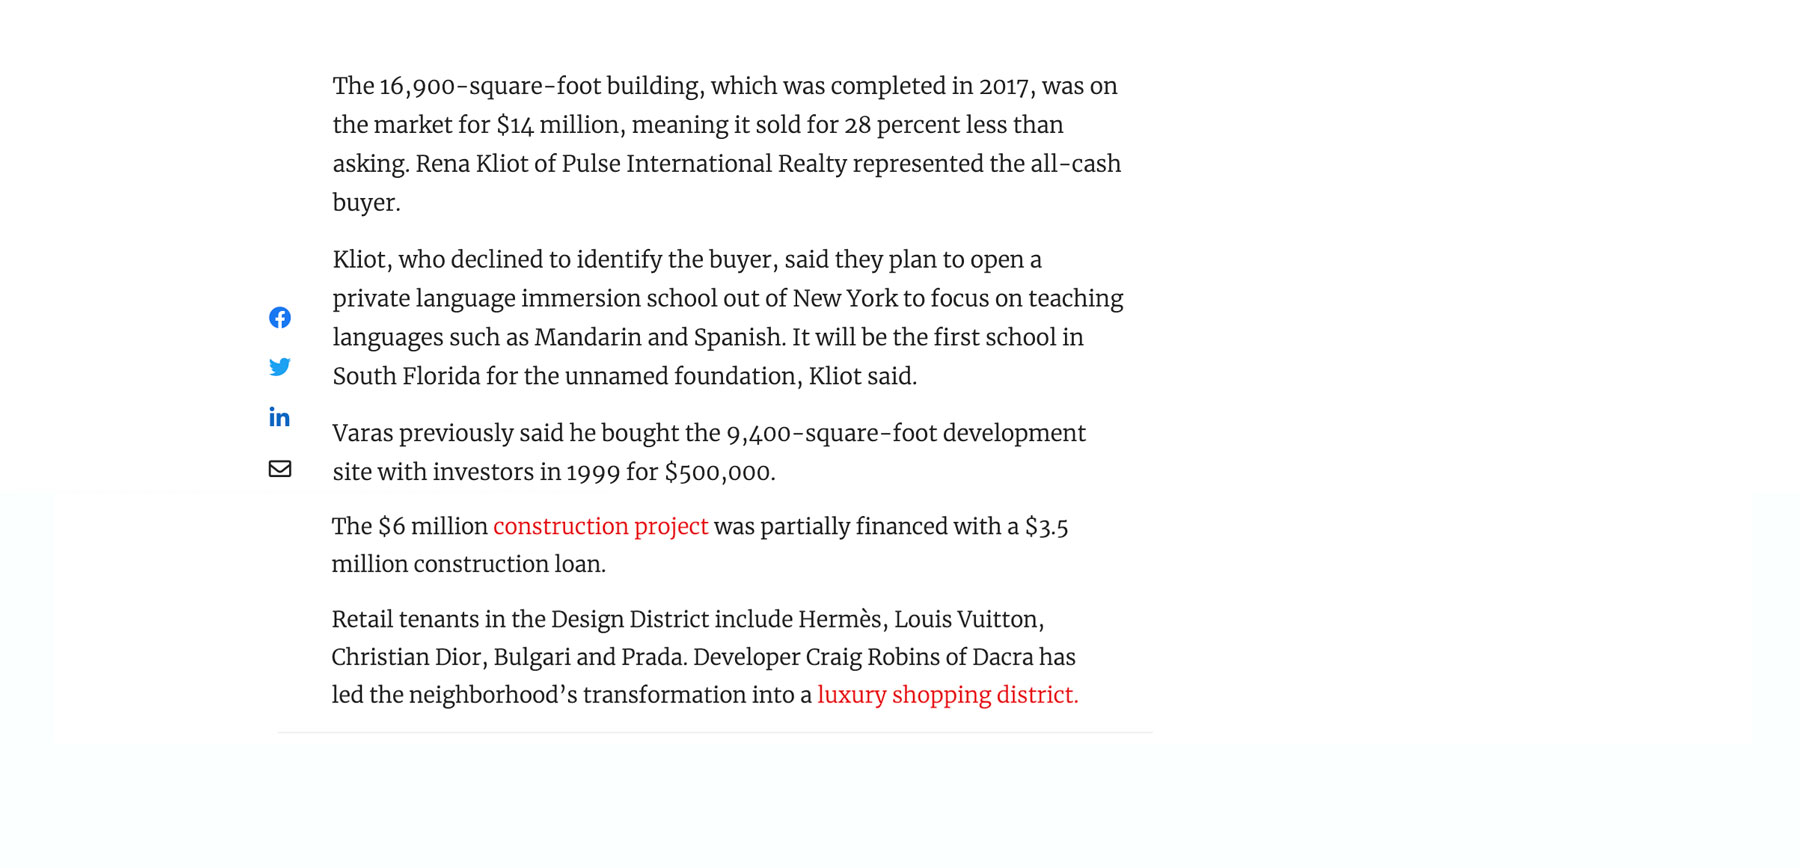 The Real Deal – MV Group Vende El Edificio Design District Por $ 10 Millones